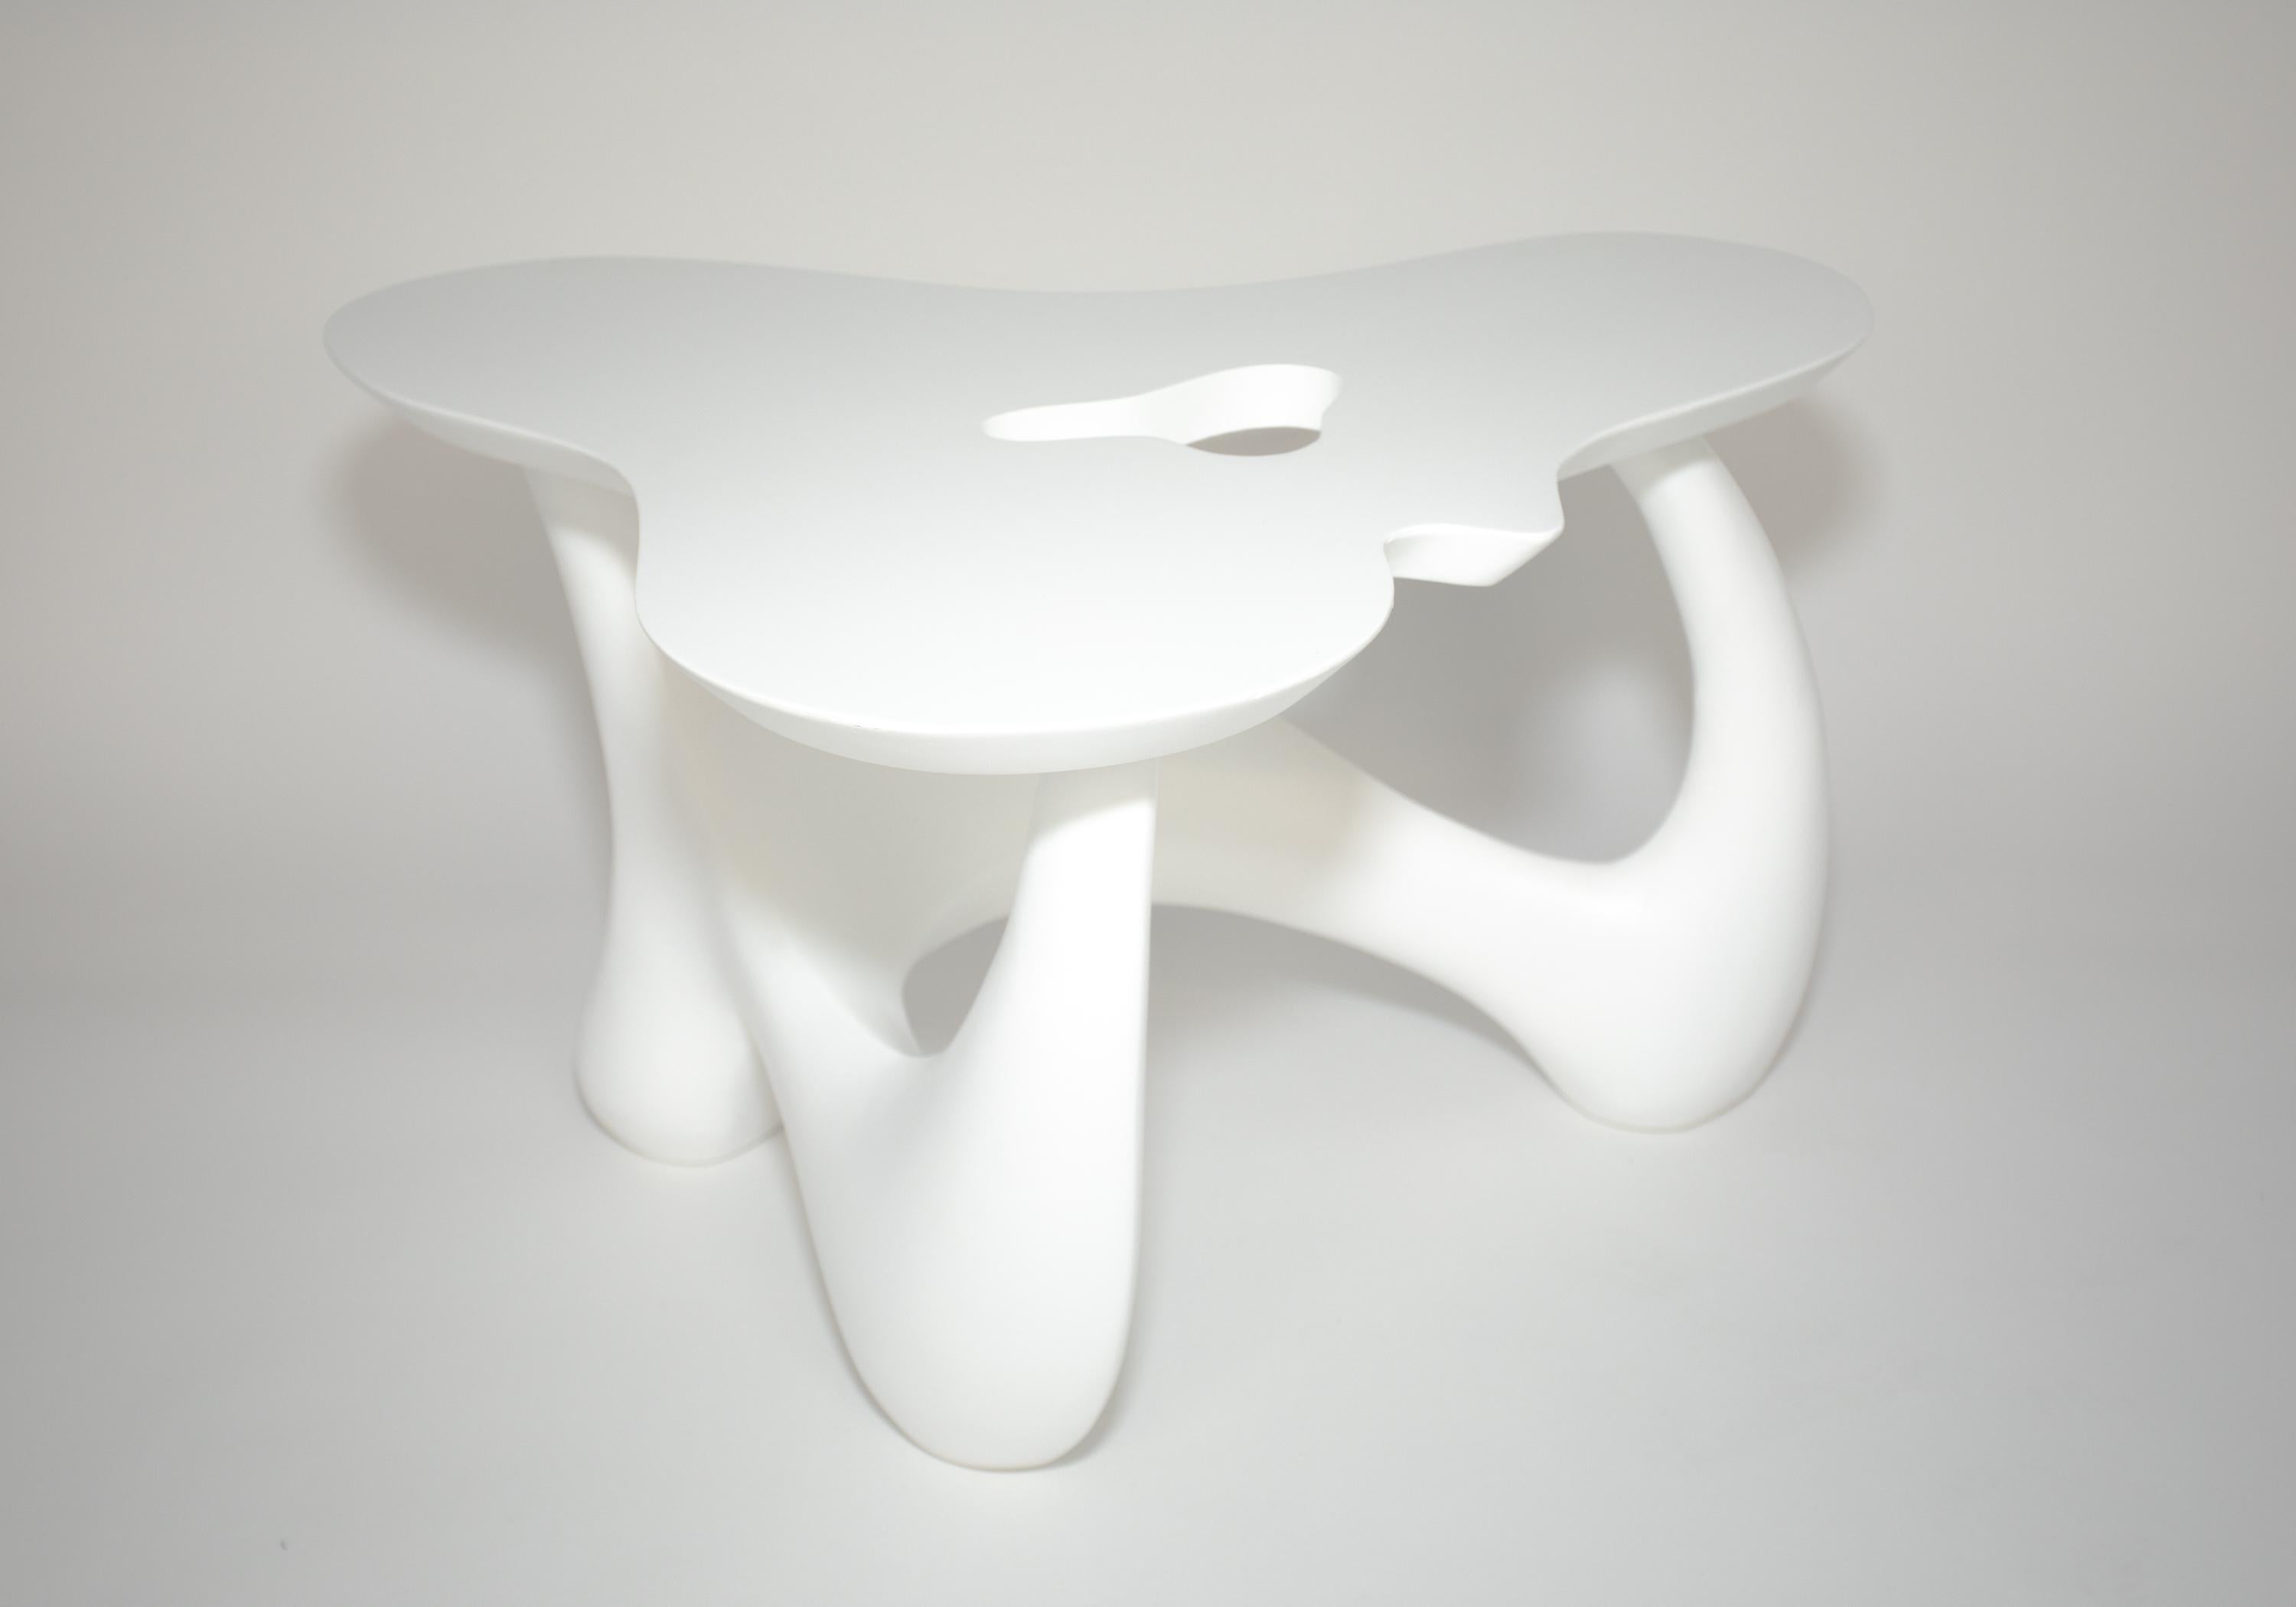 Table biomorphe en bois laqué blanc
Un exemple exubérant de design du milieu du siècle.
La base et le sommet sont des pièces séparées
joliment remis à neuf


